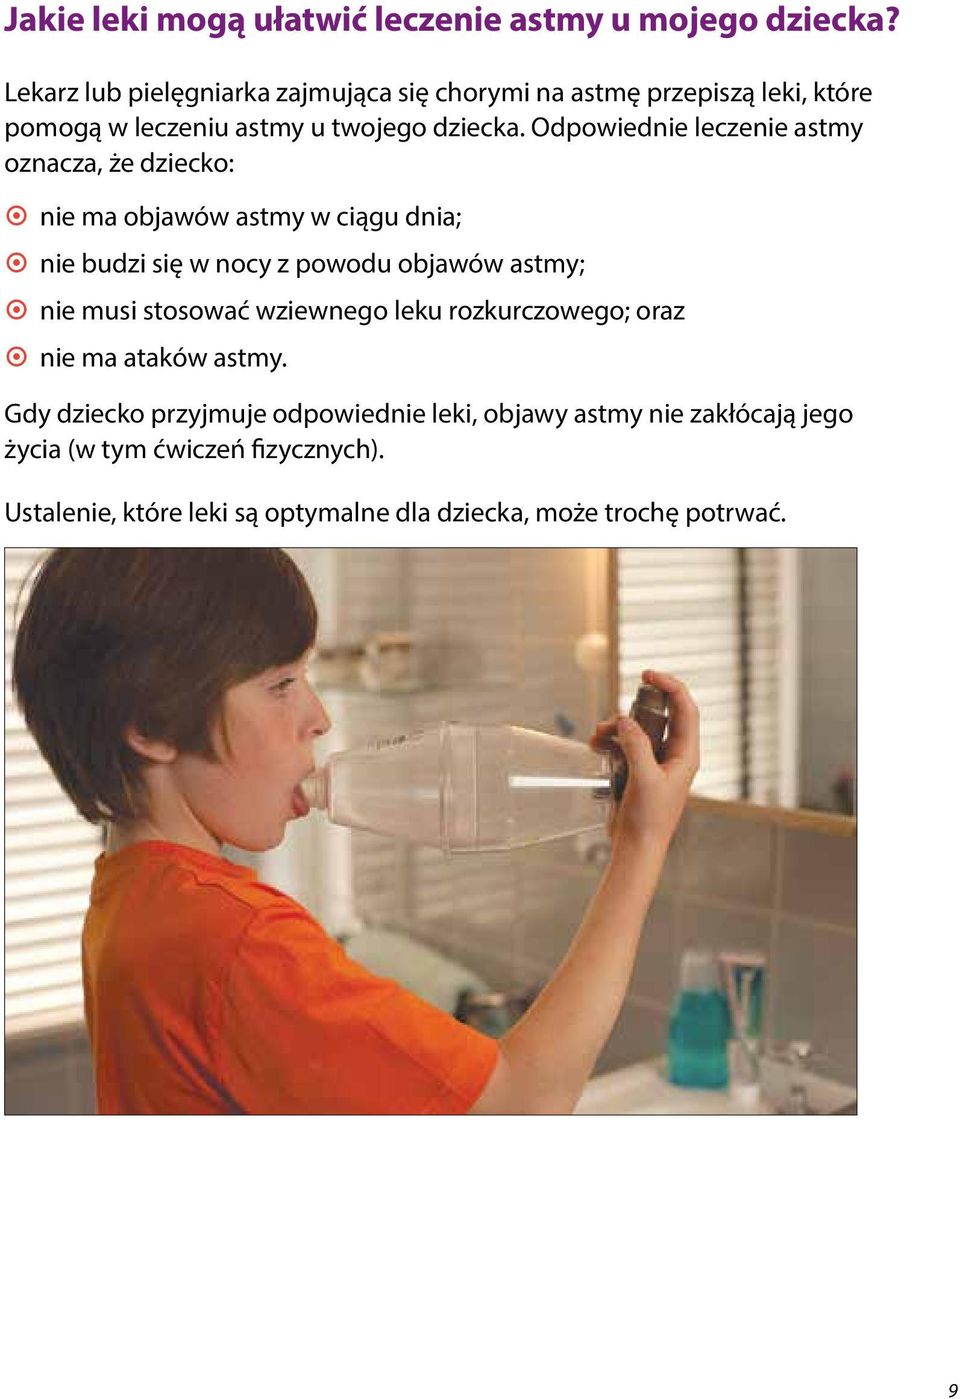 Odpowiednie leczenie astmy oznacza, że dziecko: ~ ~ nie ma objawów astmy w ciągu dnia; ~ ~ nie budzi się w nocy z powodu objawów astmy; ~ ~